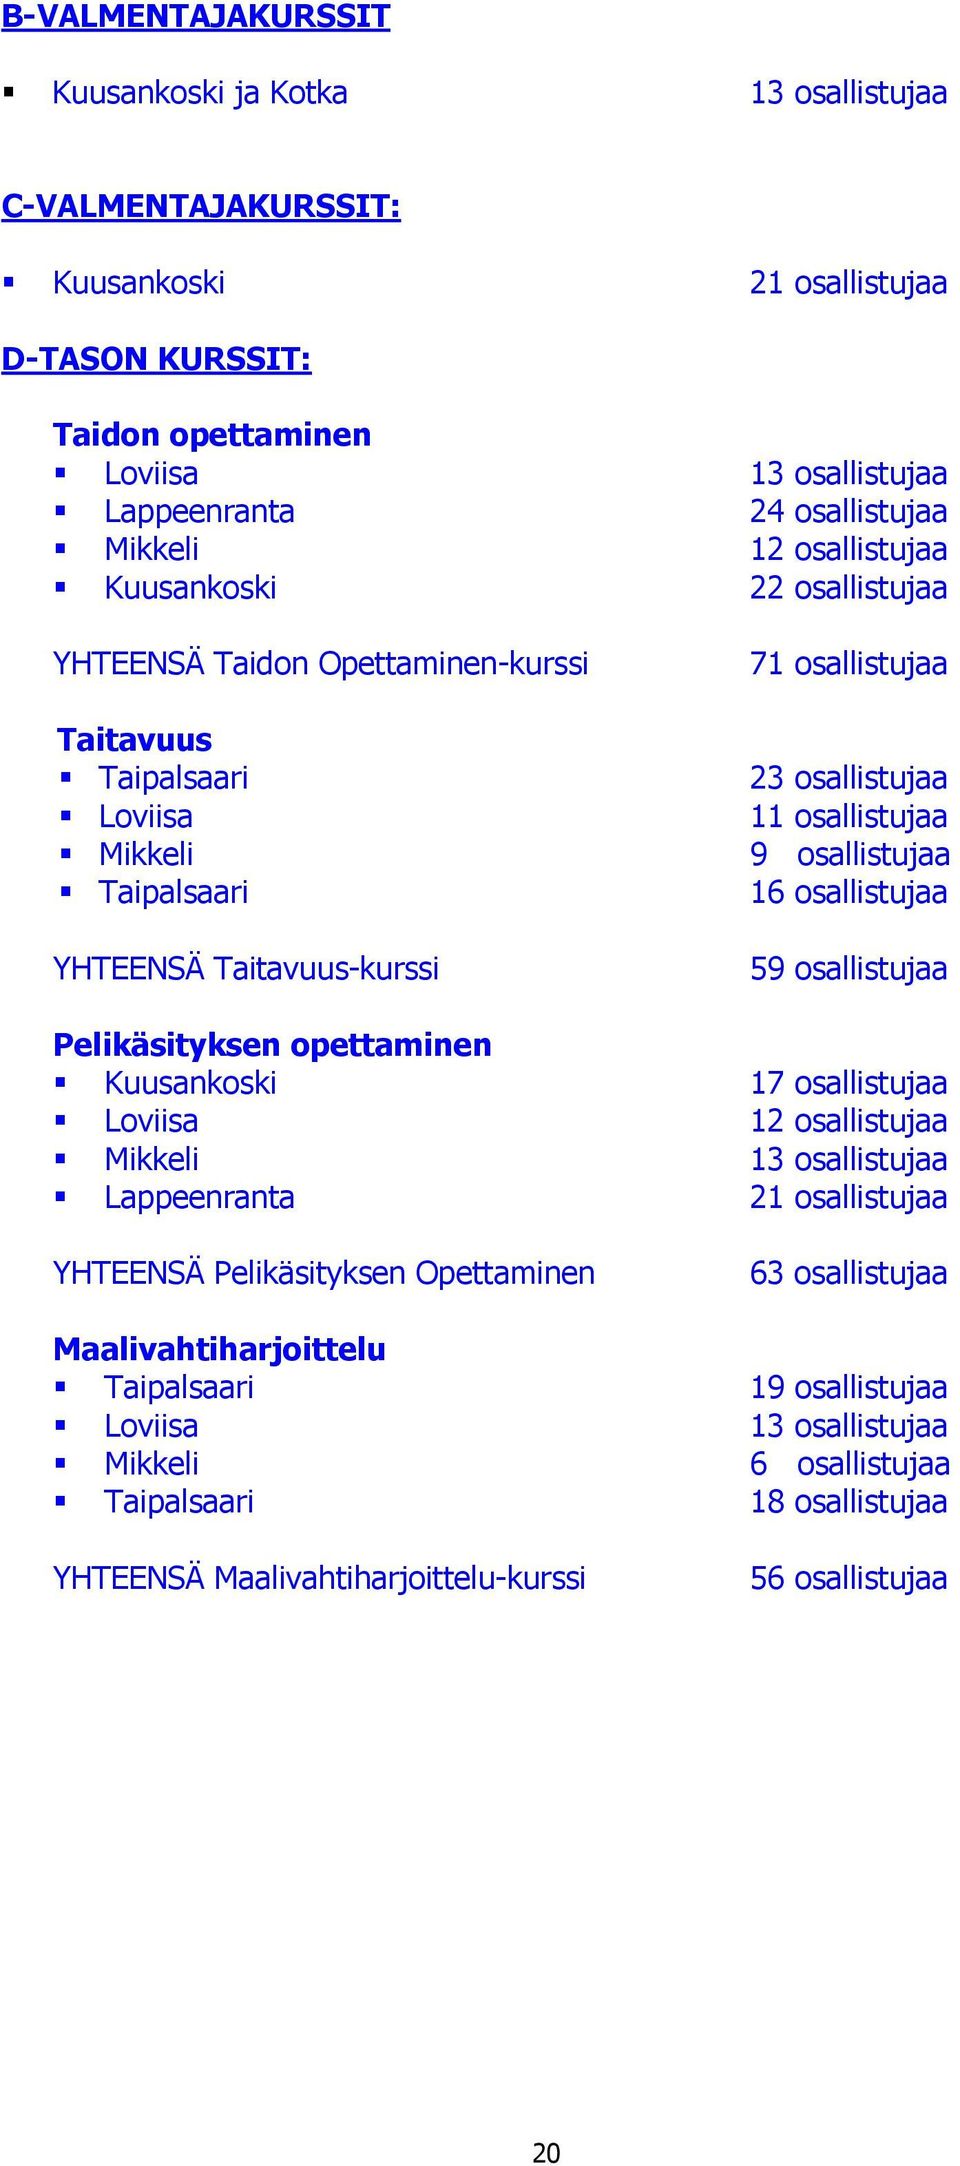 osallistujaa 9 osallistujaa 16 osallistujaa 59 osallistujaa Pelikäsityksen opettaminen Kuusankoski 17 osallistujaa Loviisa 12 osallistujaa Mikkeli 13 osallistujaa Lappeenranta 21 osallistujaa